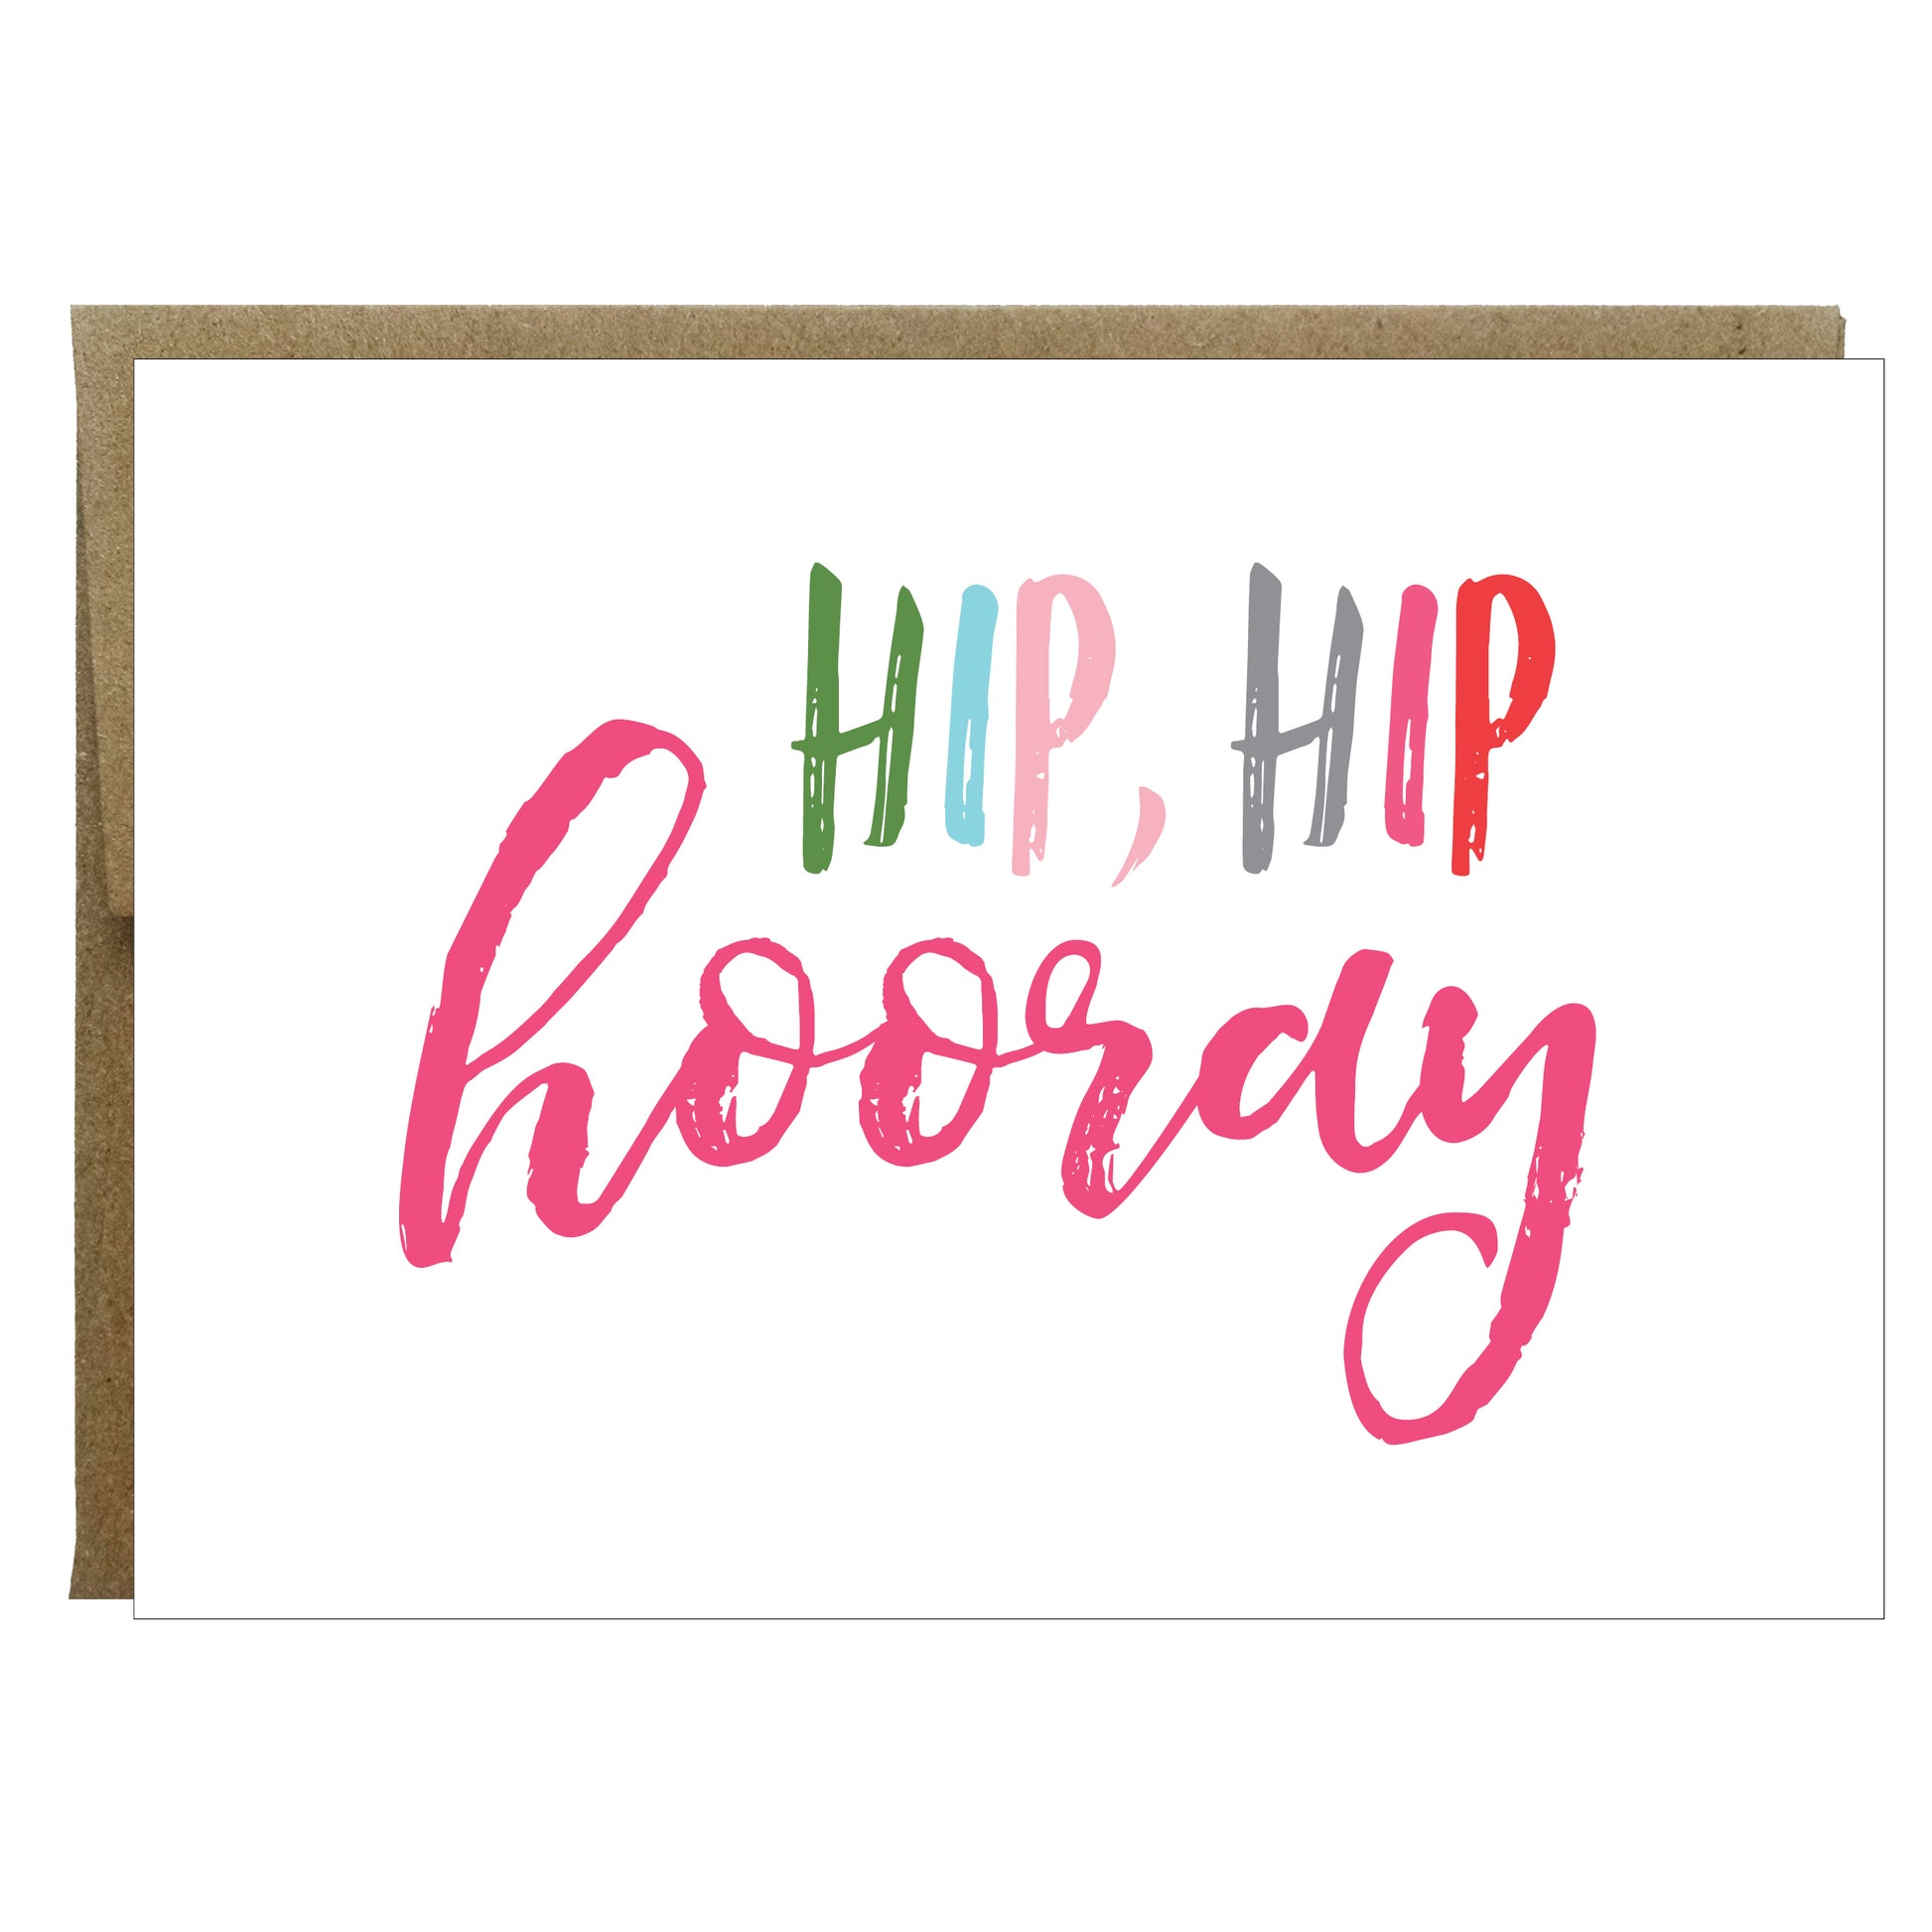 Hip Hip Hooray Greeting Card - Idea Chíc